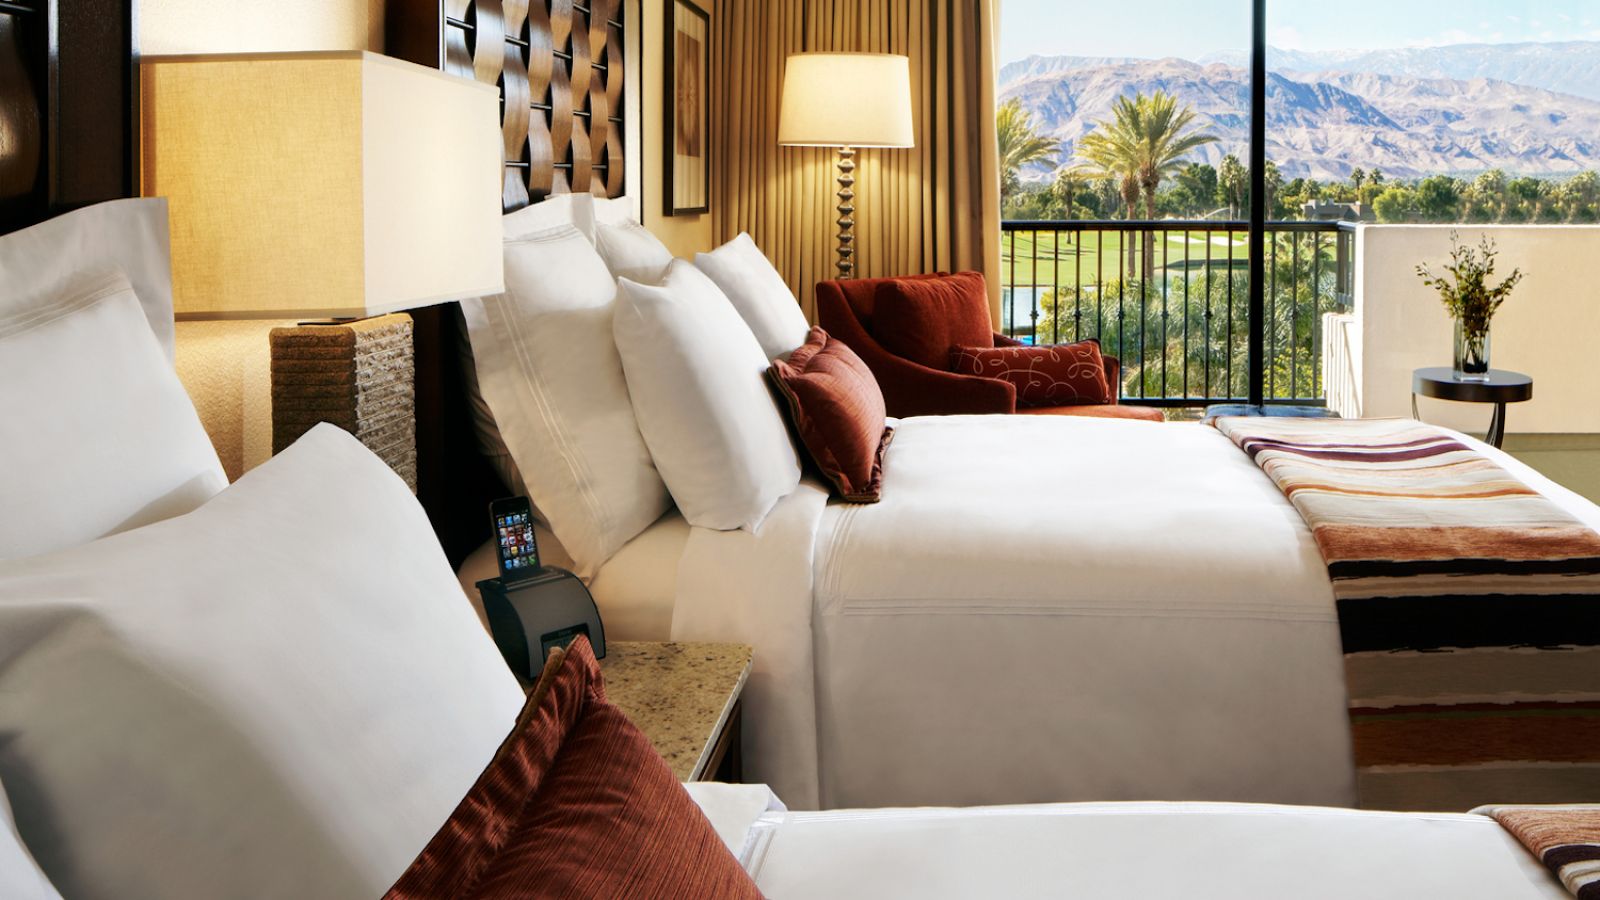 JW Marriott Desert Springs Resort & Spa - Palm Springs golf packages